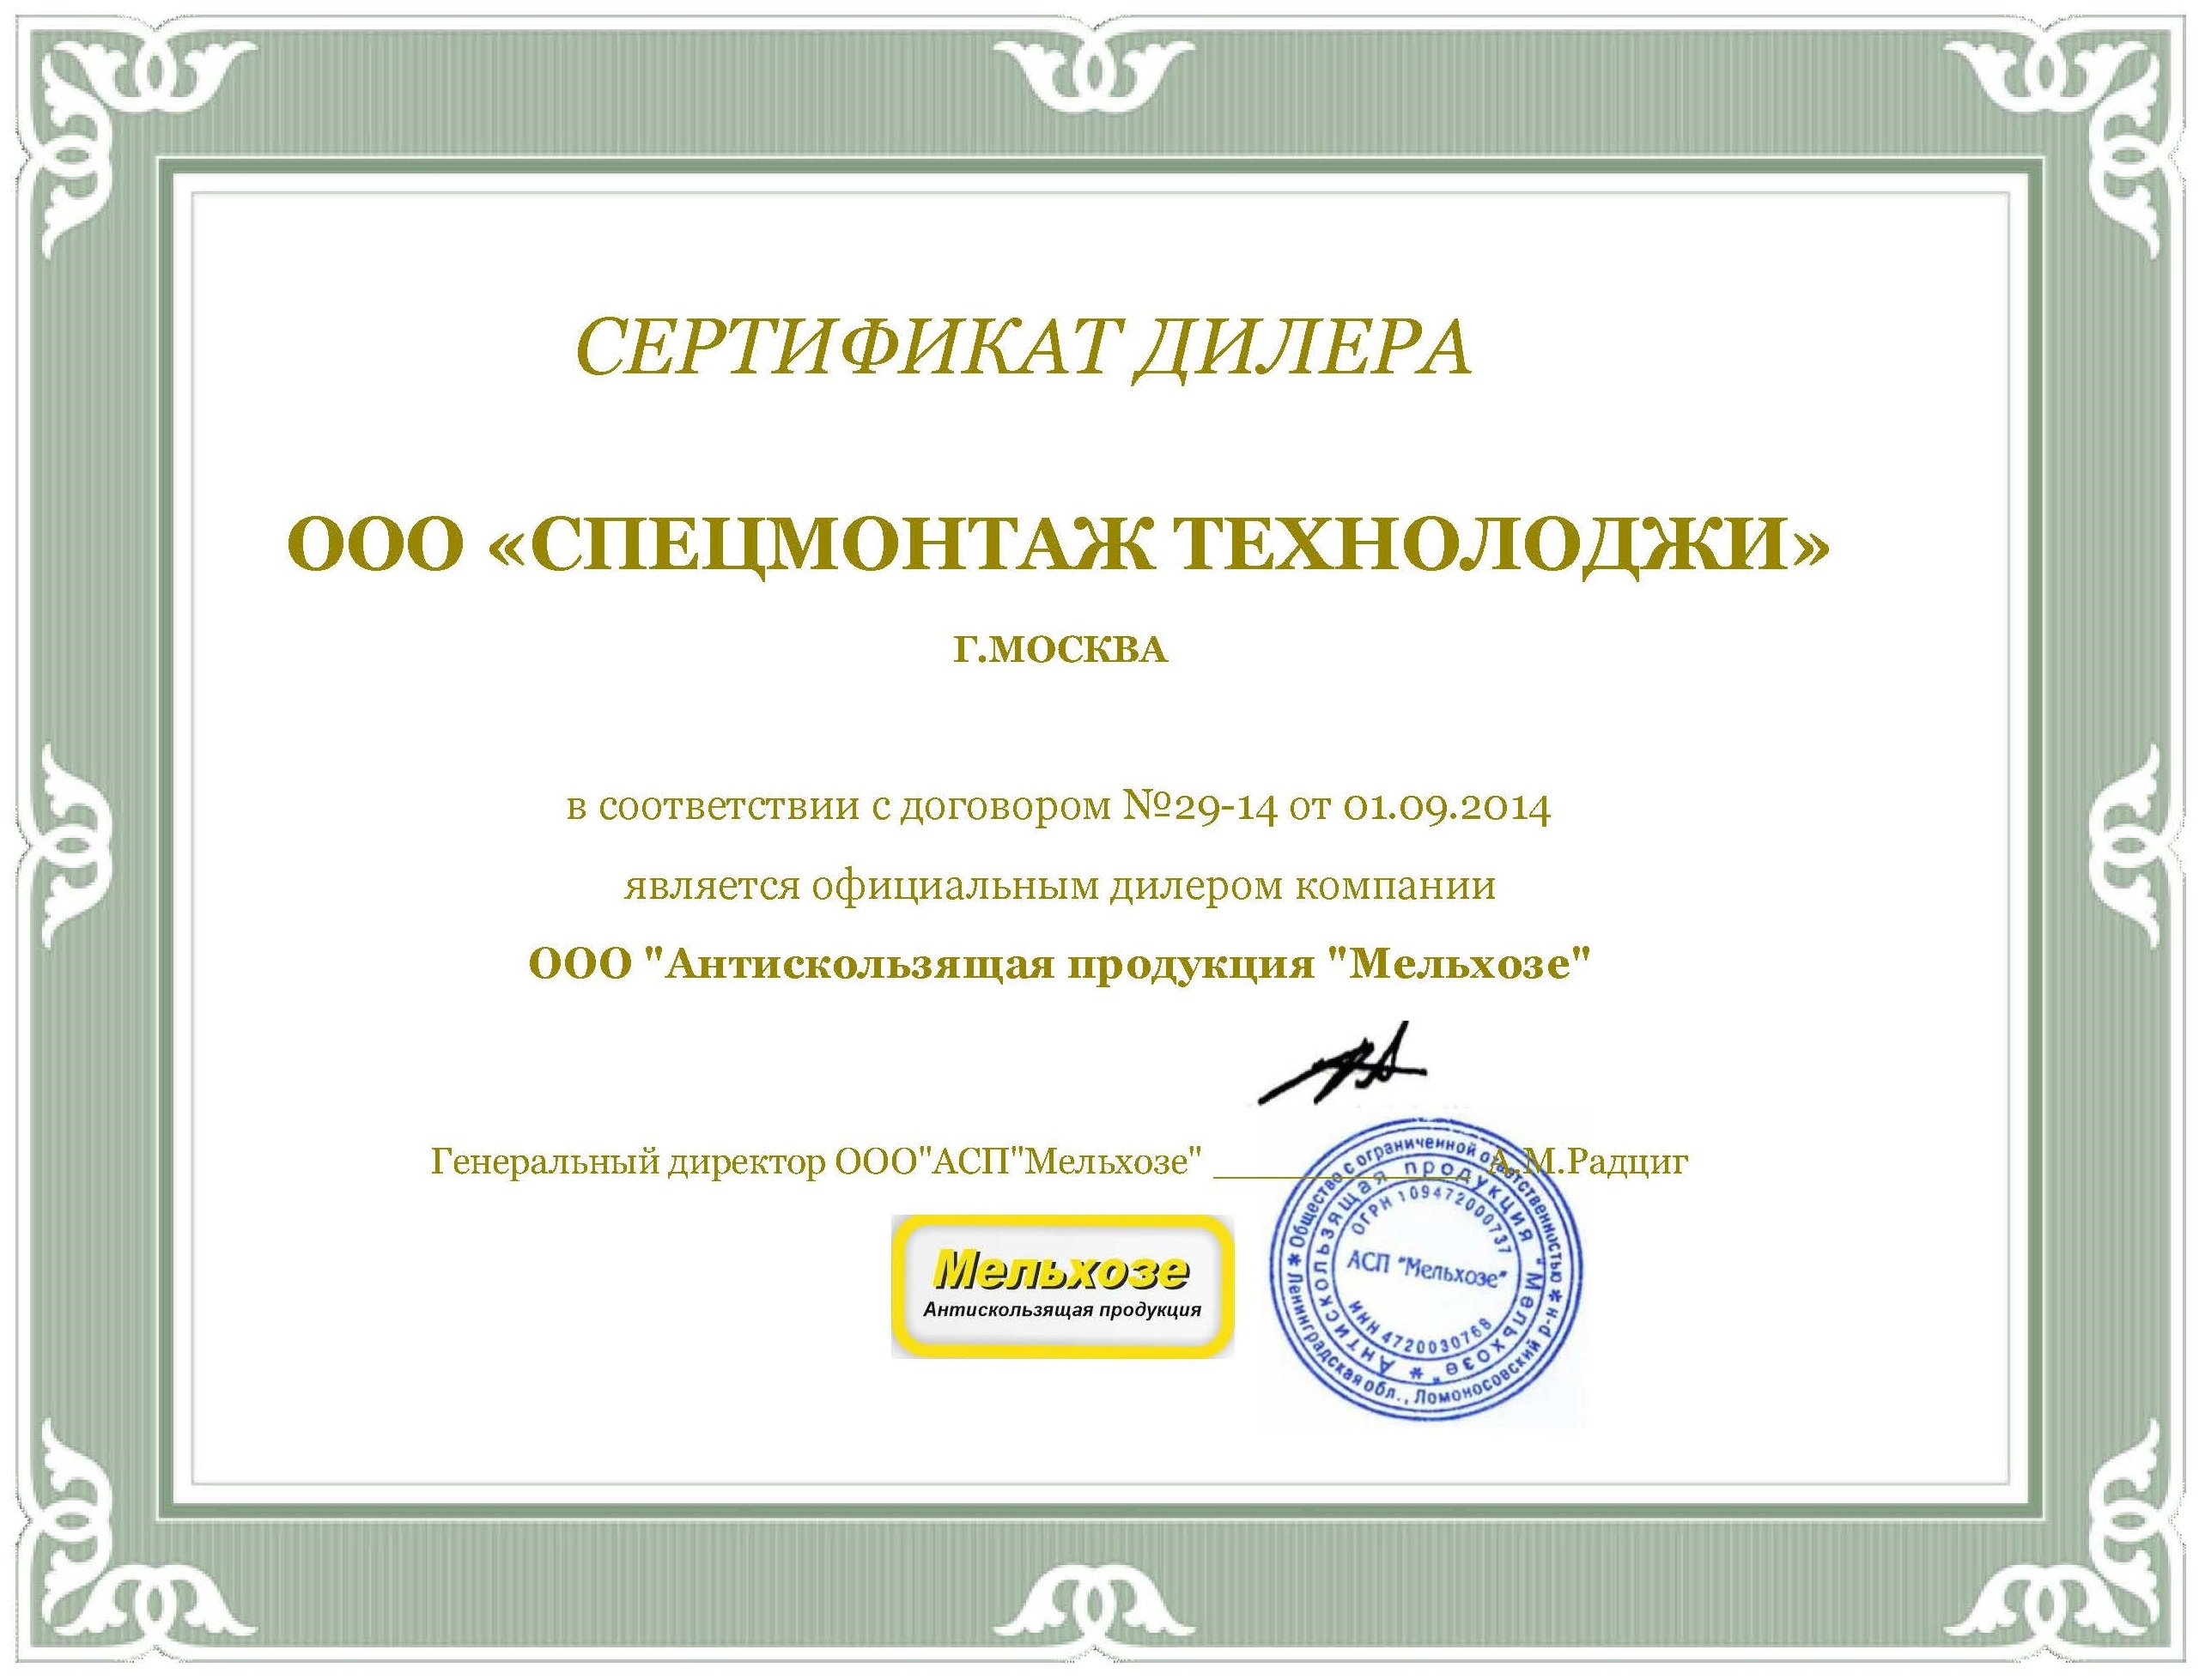 Сертификат дилера компании Мельхозе.